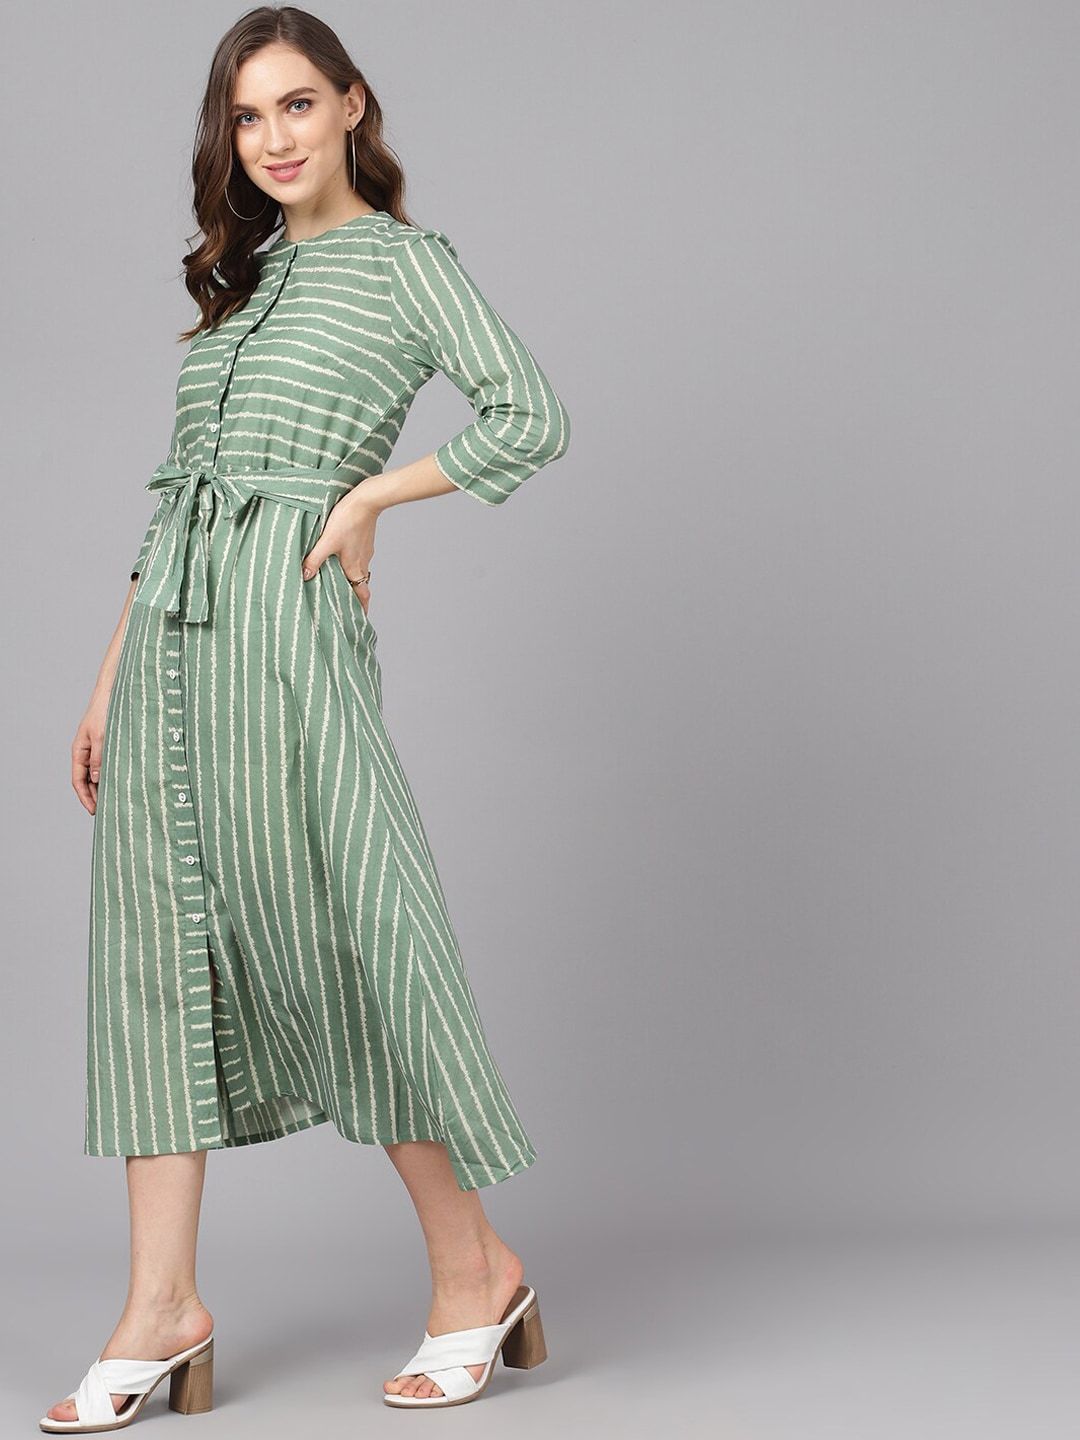 Women's  Green & Beige Striped A-Line Dress - AKS